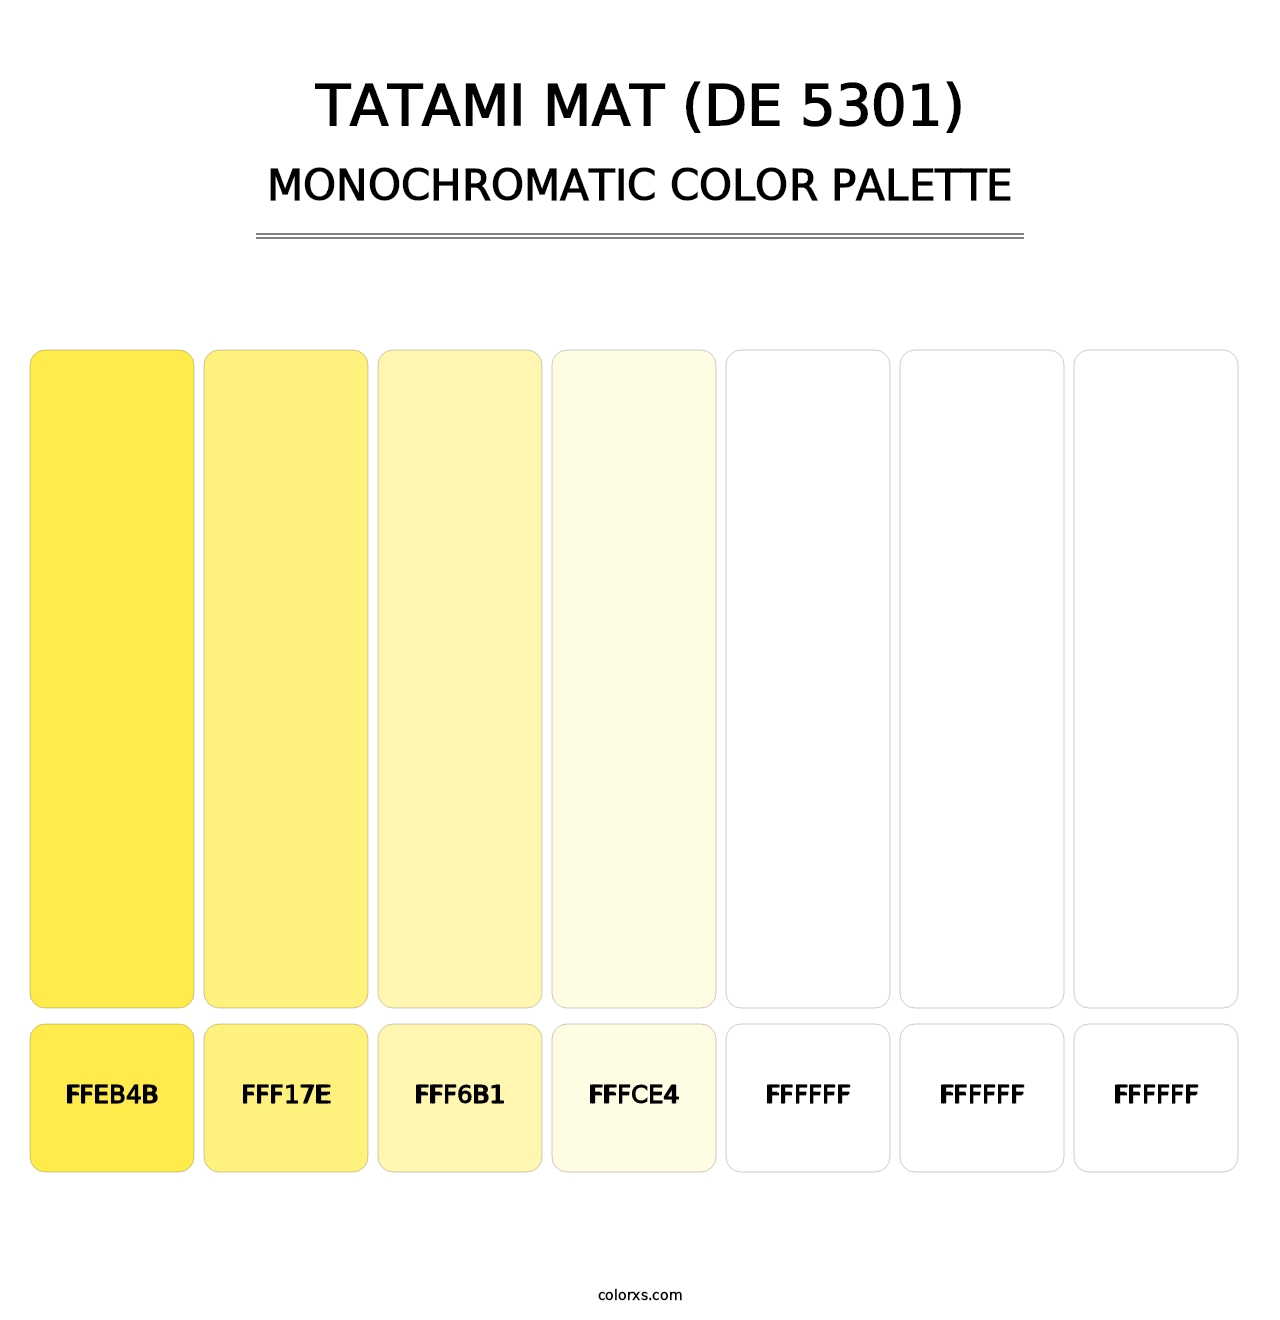 Tatami Mat (DE 5301) - Monochromatic Color Palette